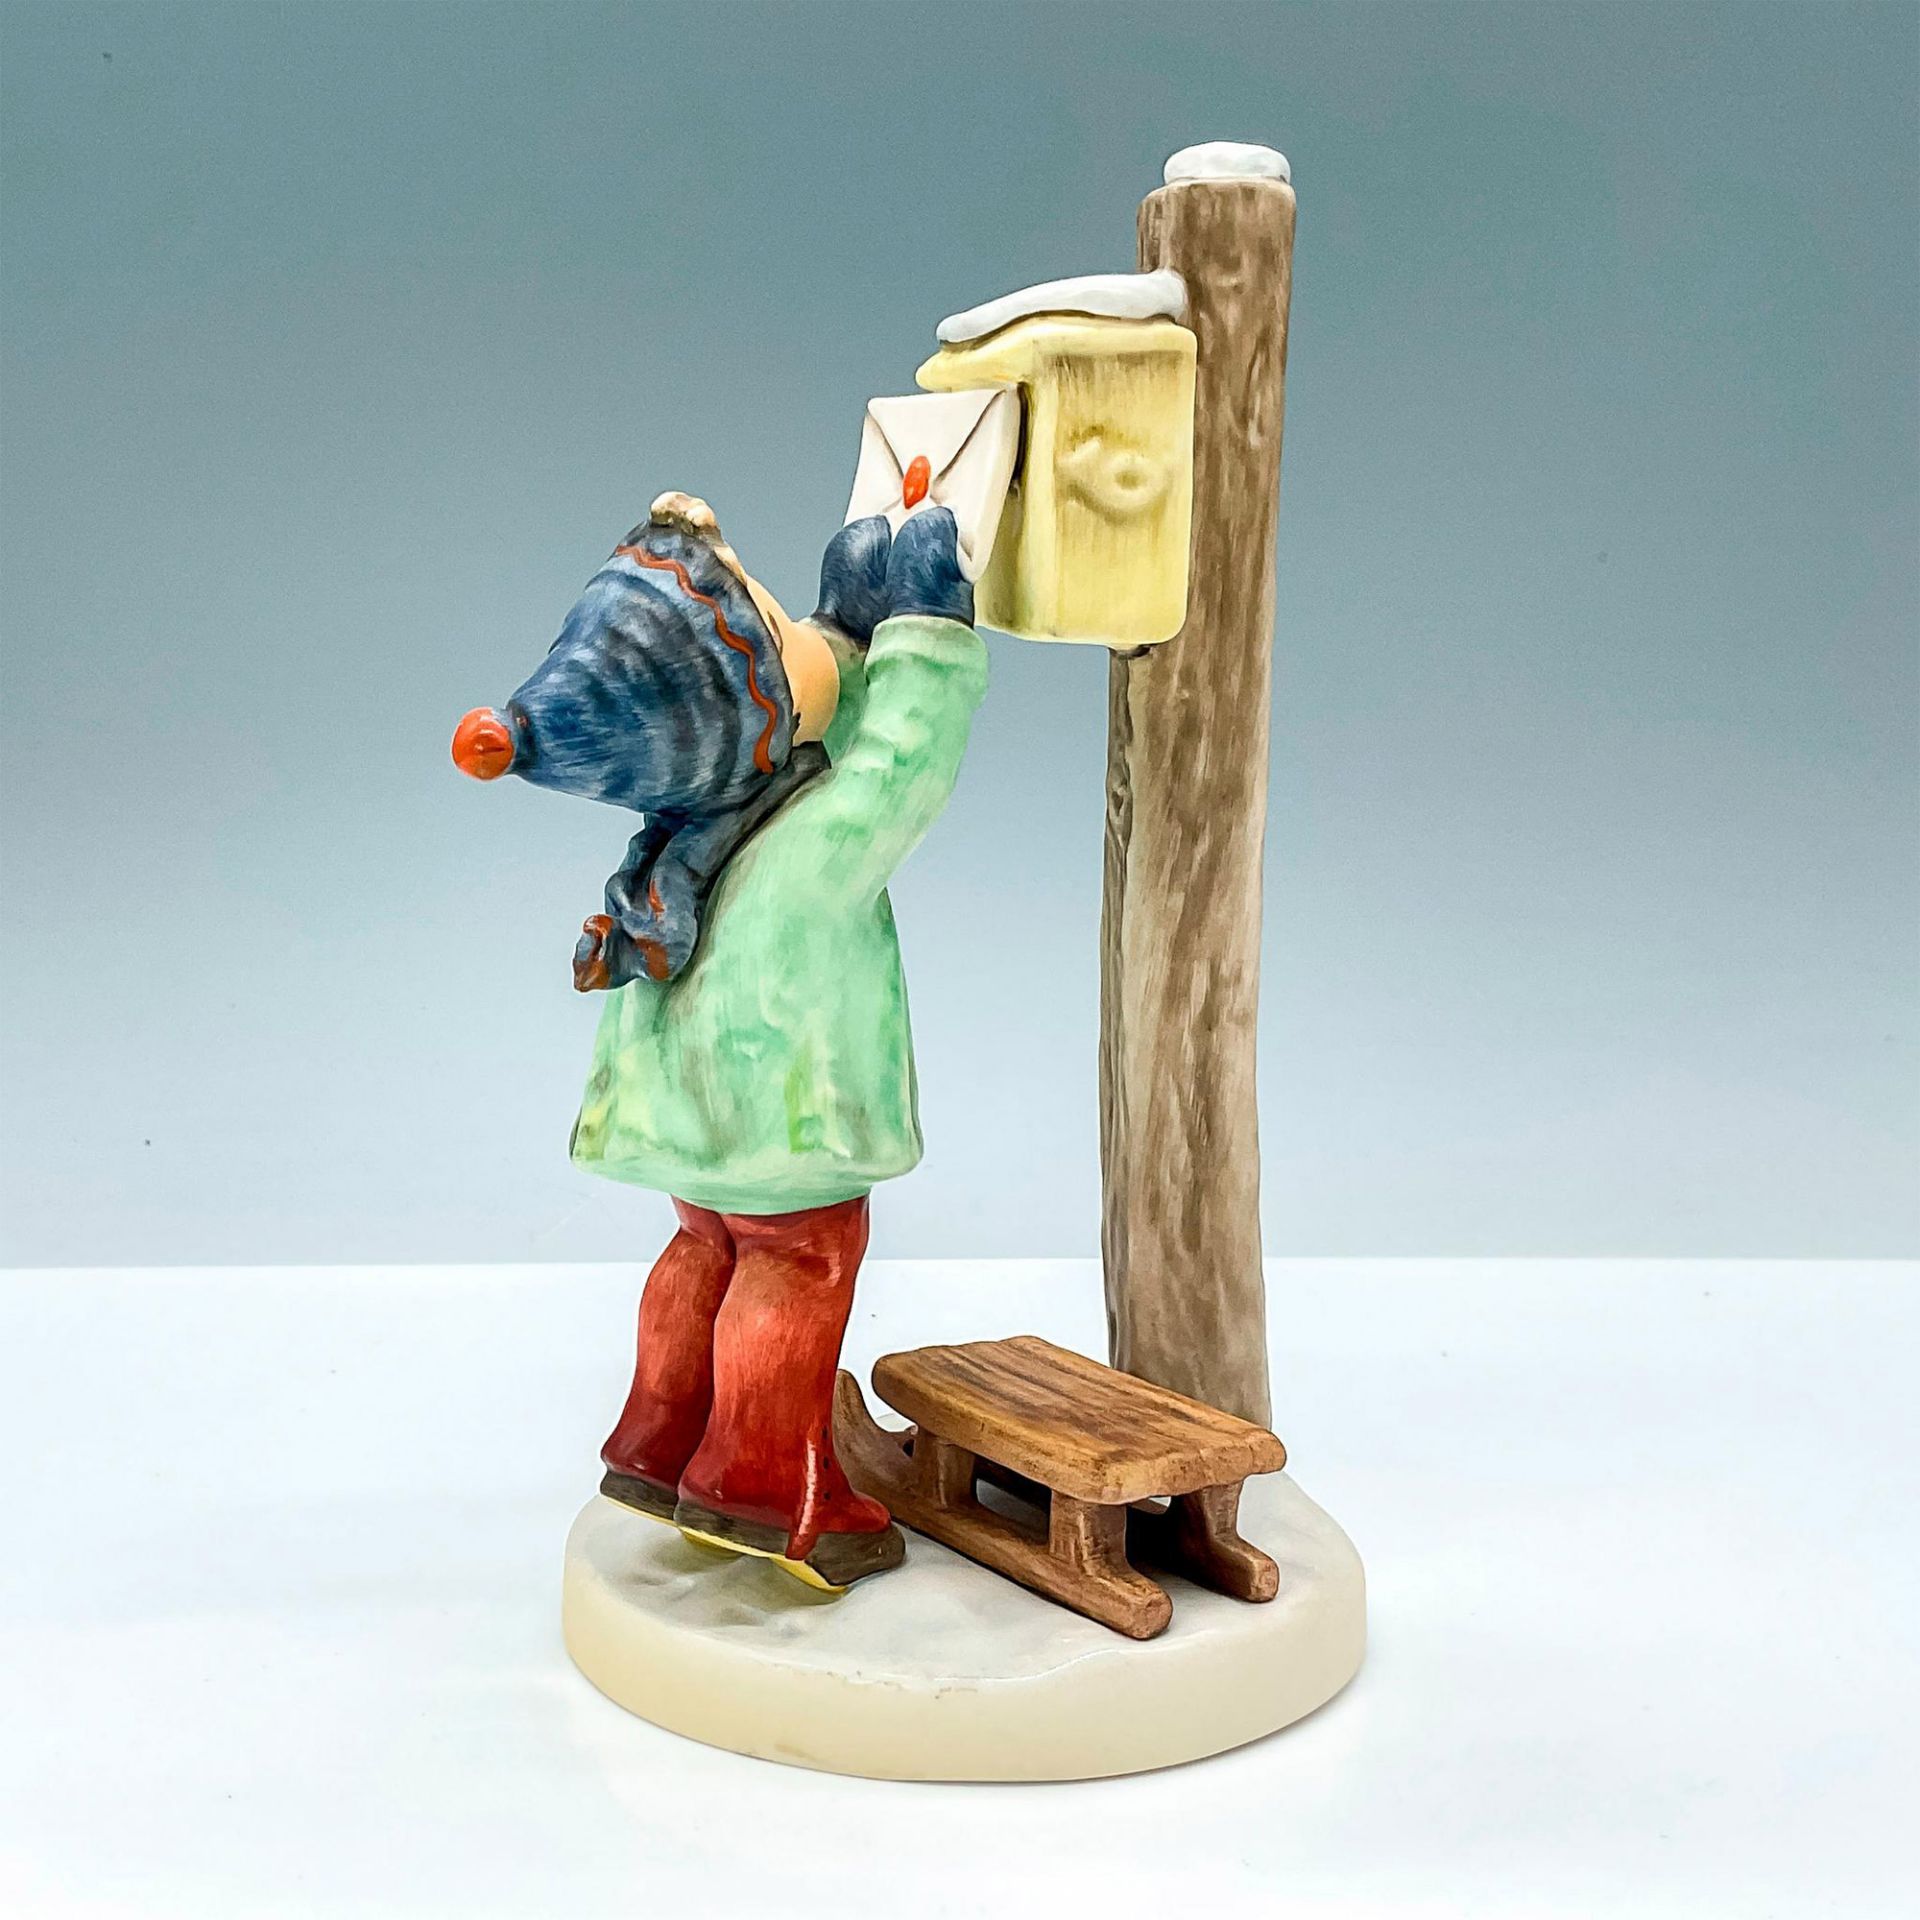 Goebel Hummel Porcelain Figurine, Letter to Santa Claus